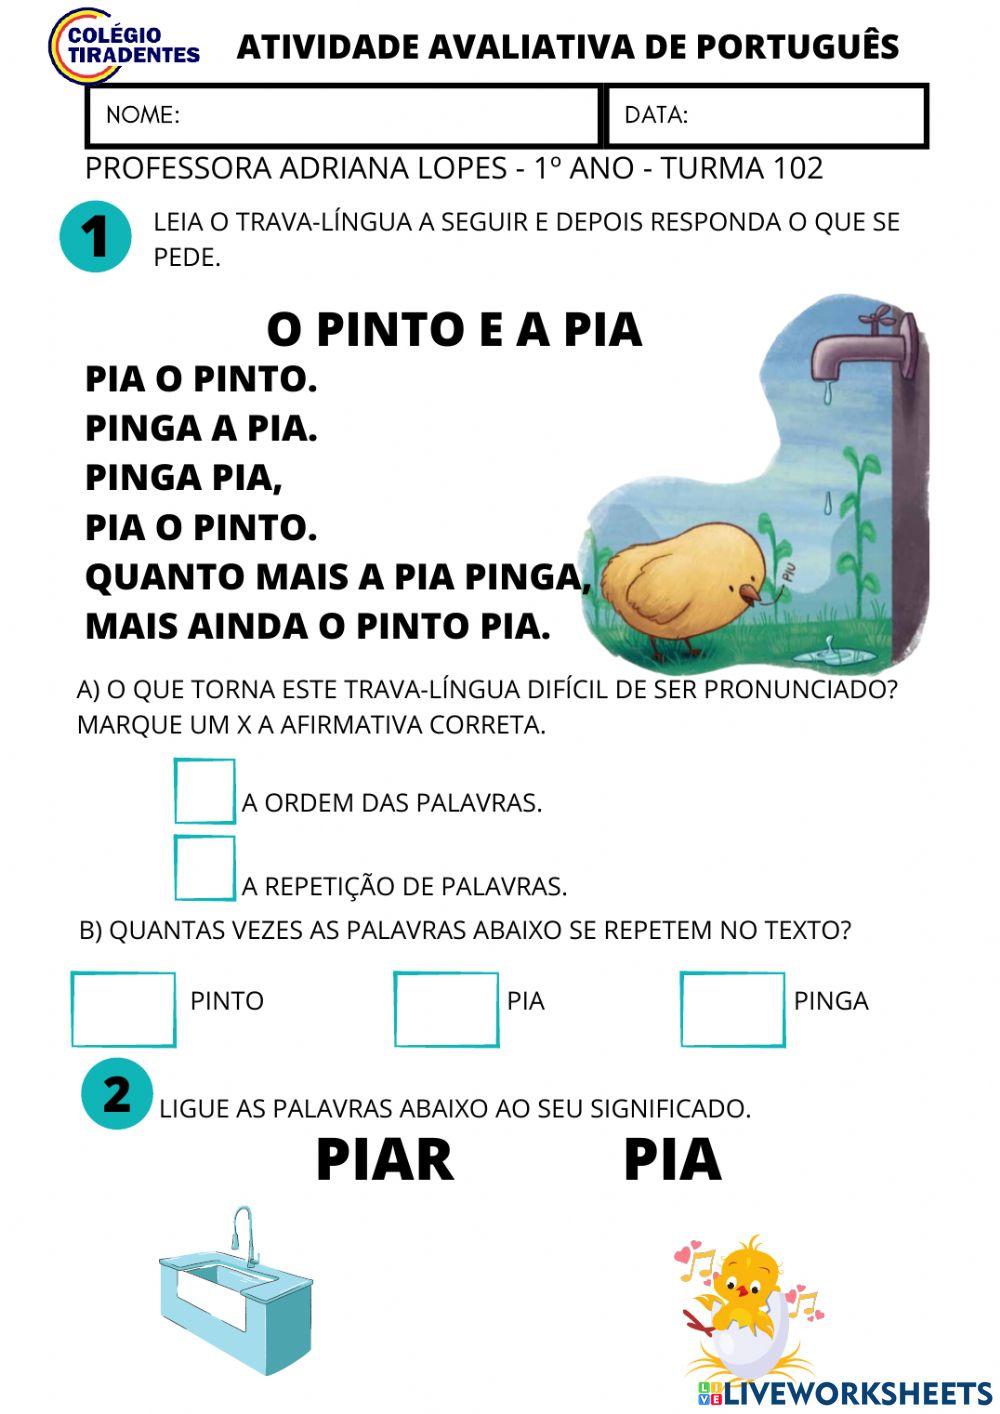 Atividade avaliativa de português